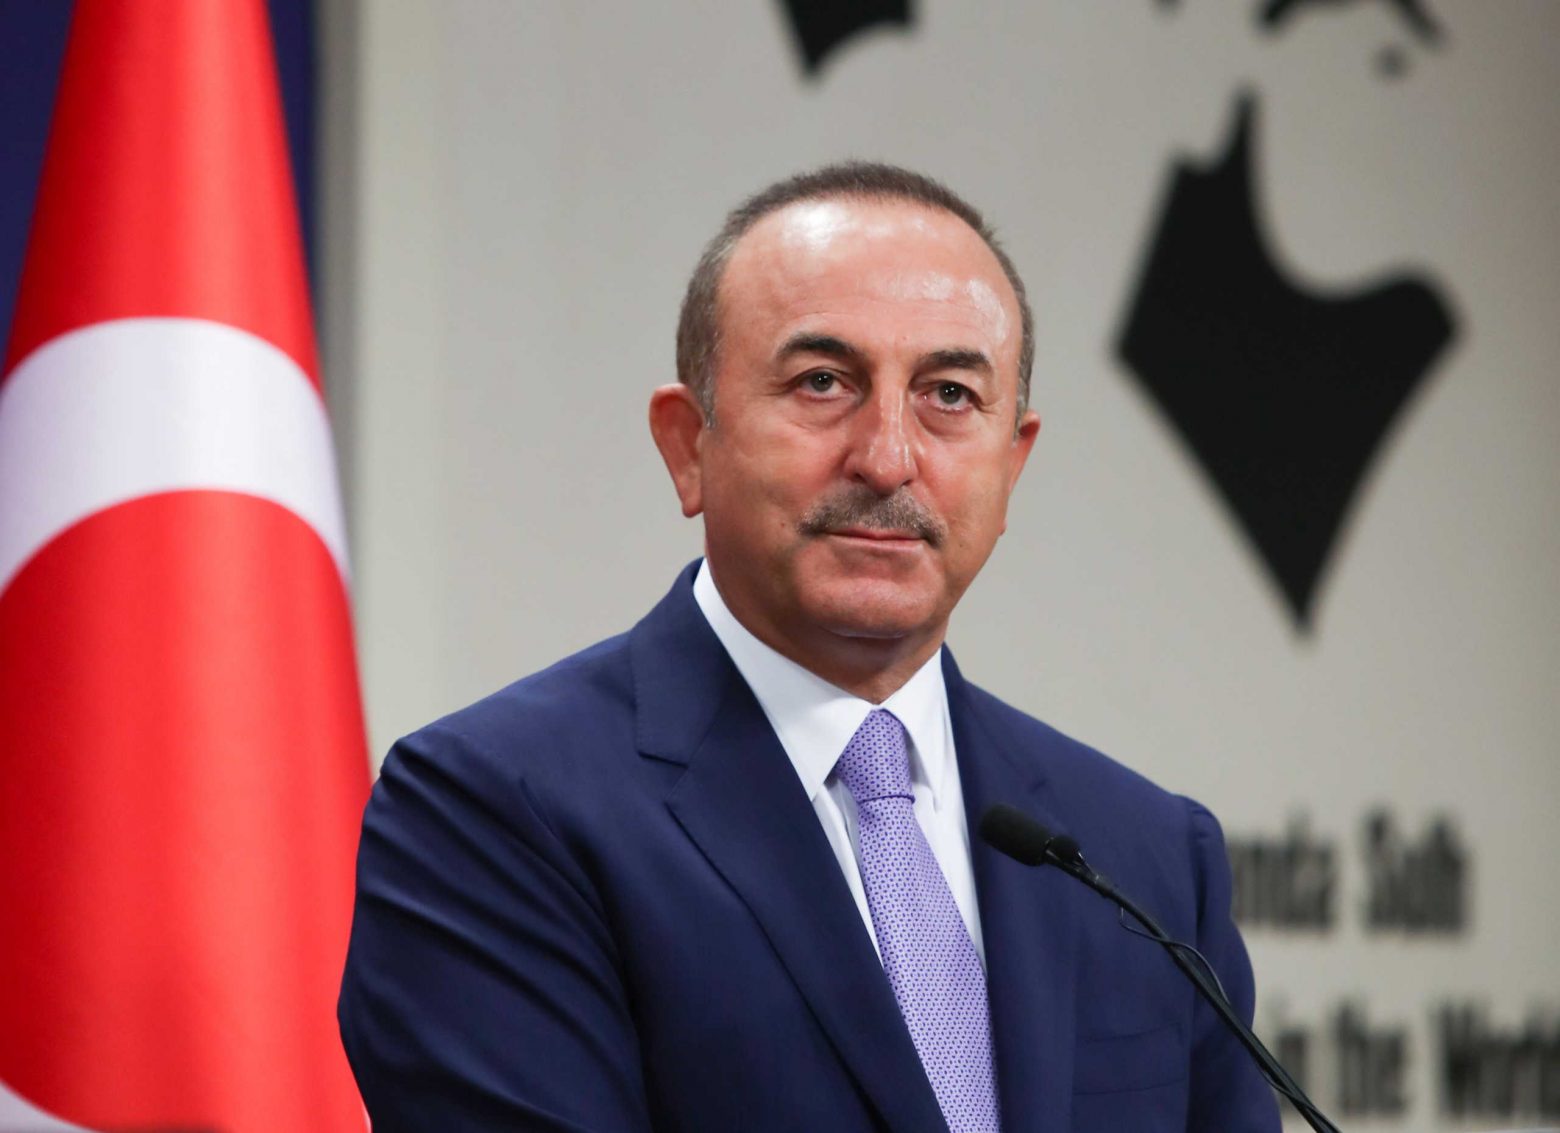 Νέες προκλητικές δηλώσεις Τσαβούσογλου: Το τουρκολιβυκό μνημόνιο θα καθορίσει τις ισορροπίες στην Αν. Μεσόγειο